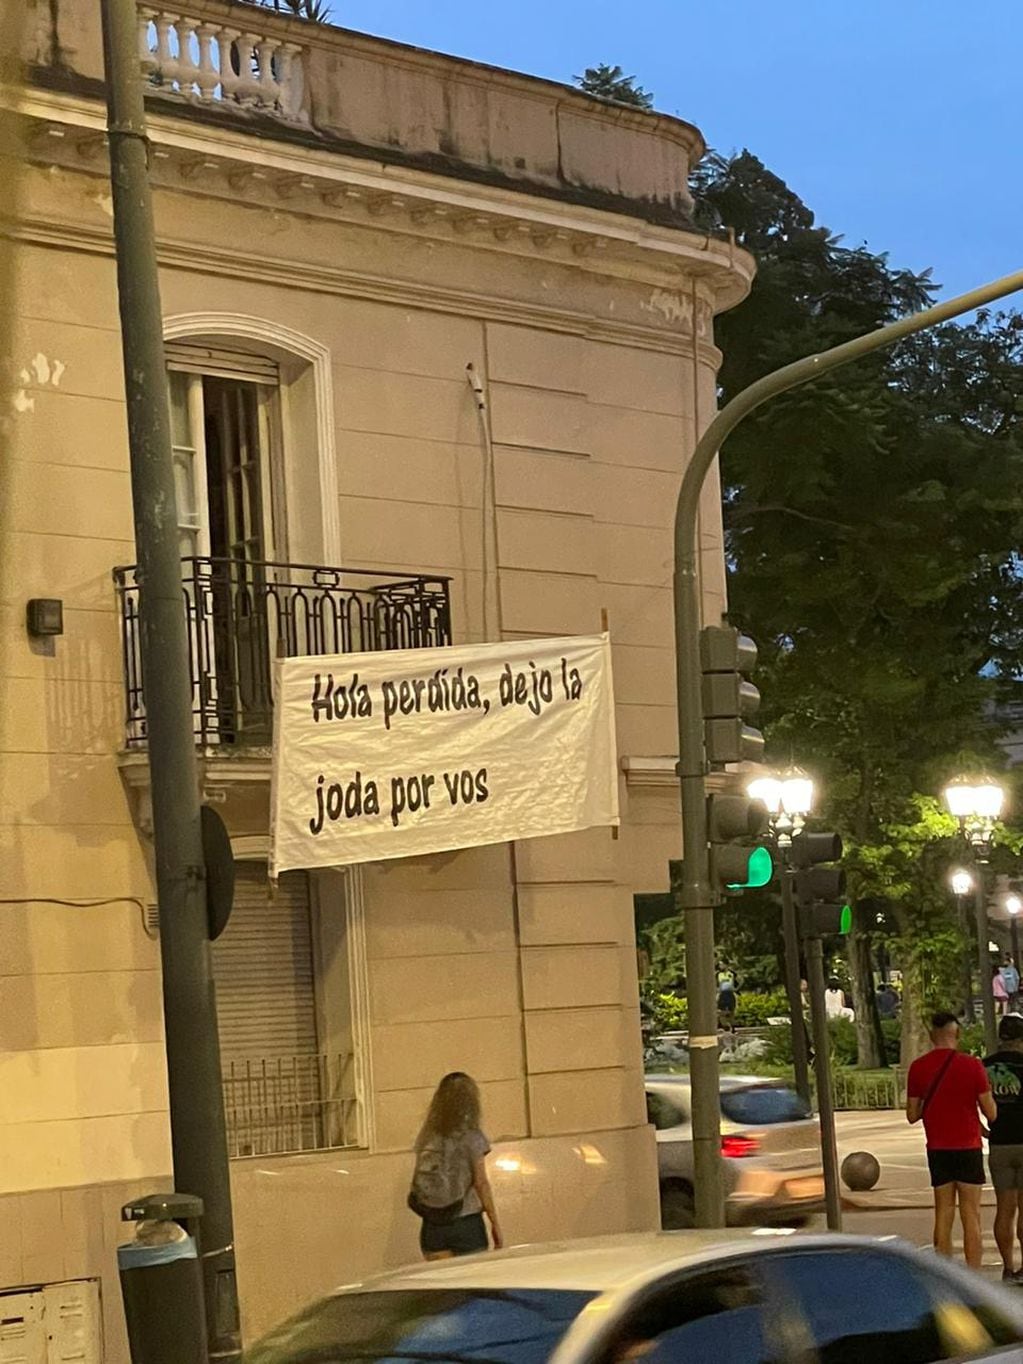 Los enigmáticos carteles que aparecieron en Córdoba: "Hola perdida, dejo la joda por vos".